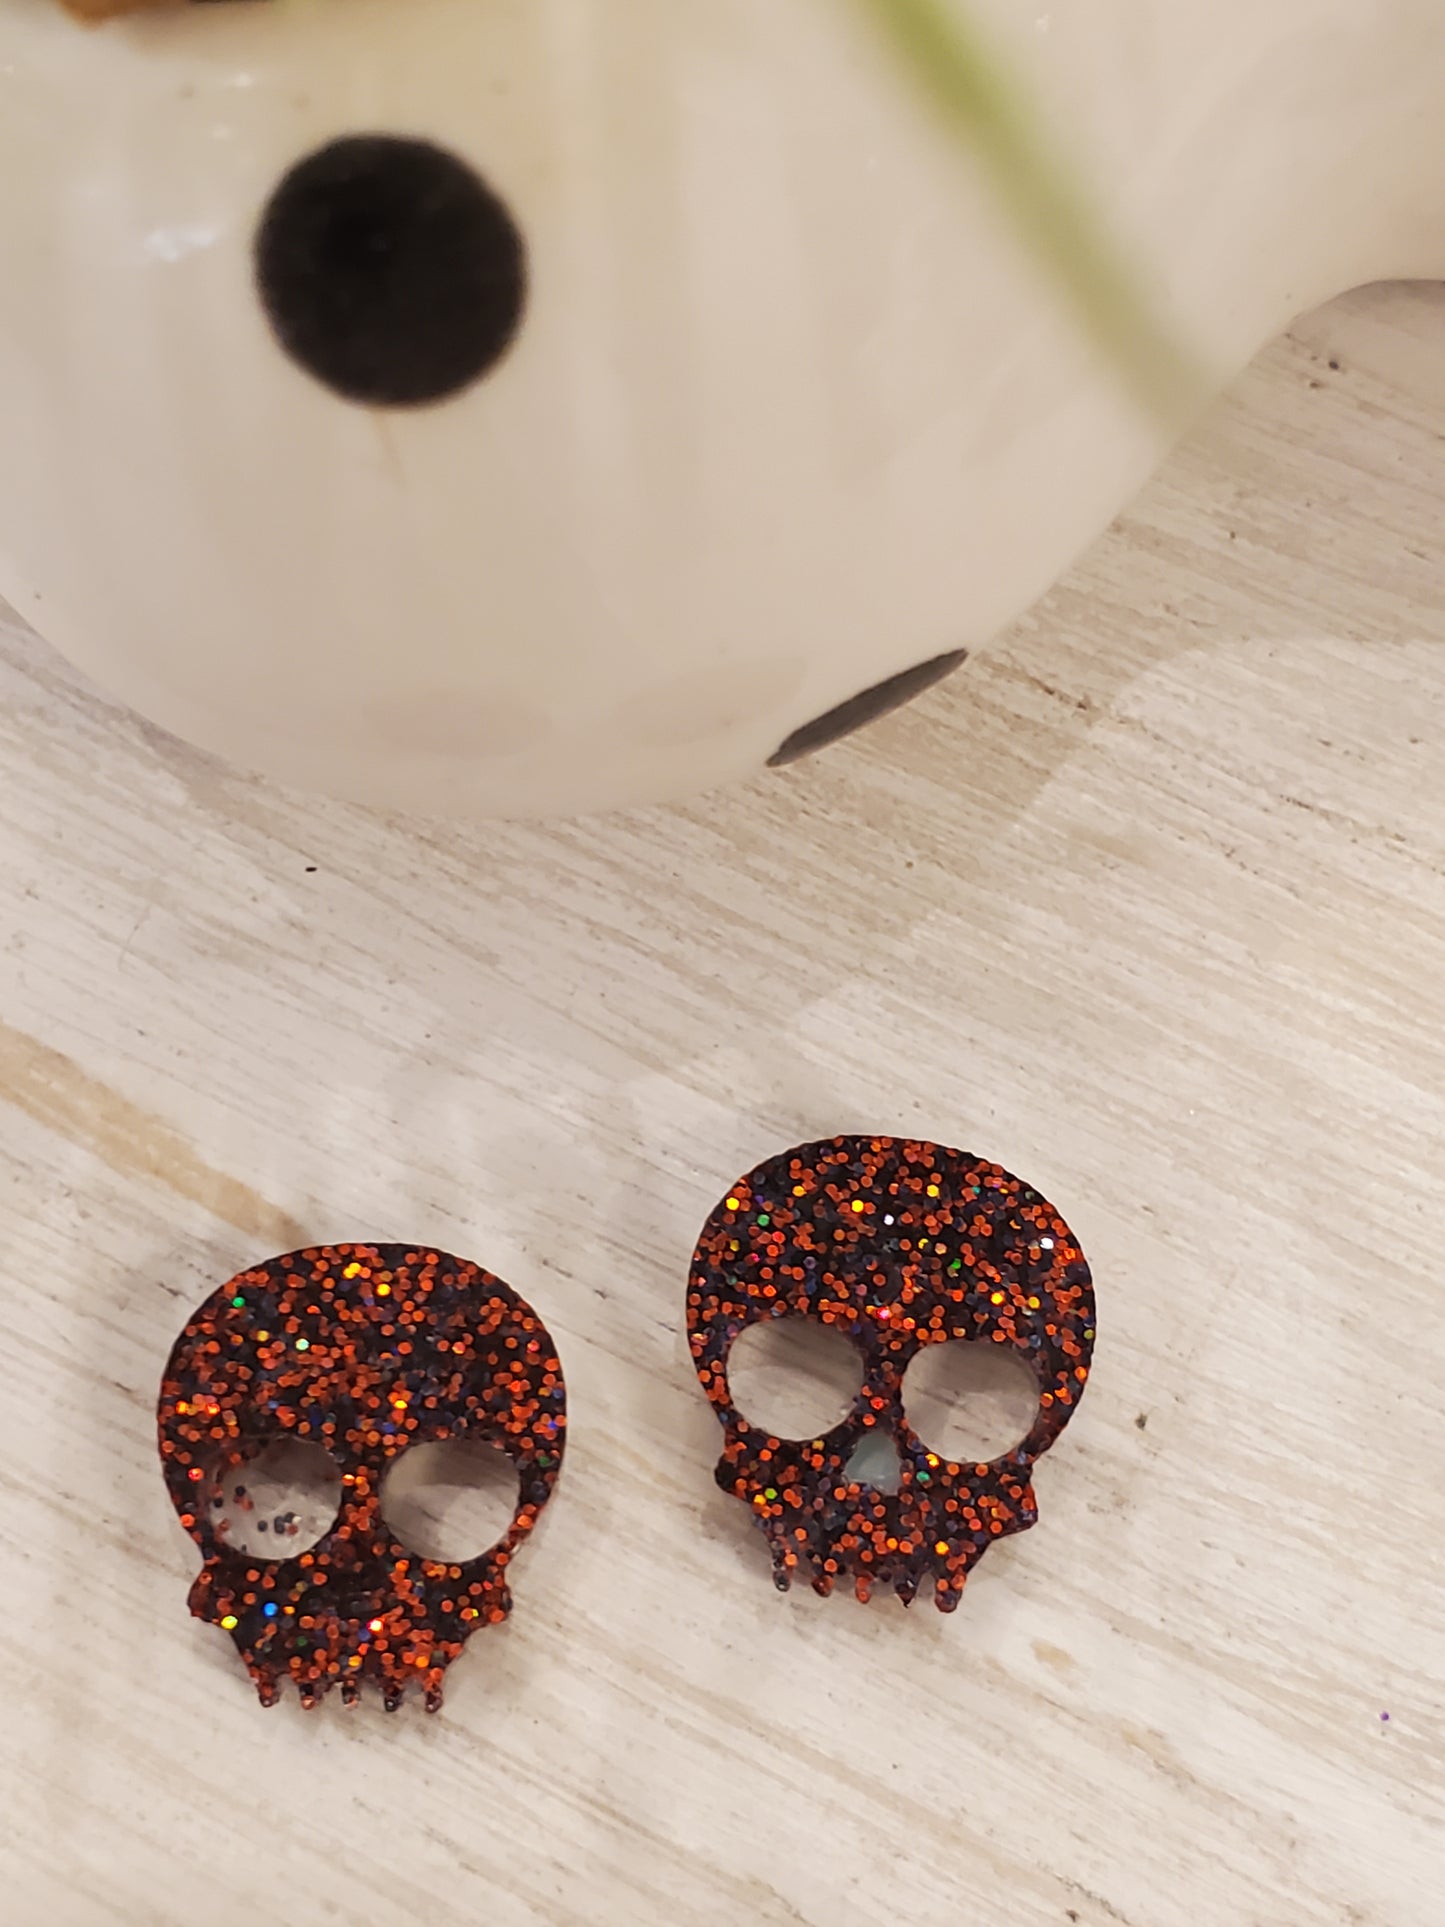 Handmade resin and glitter Skull Orange earrings small studs